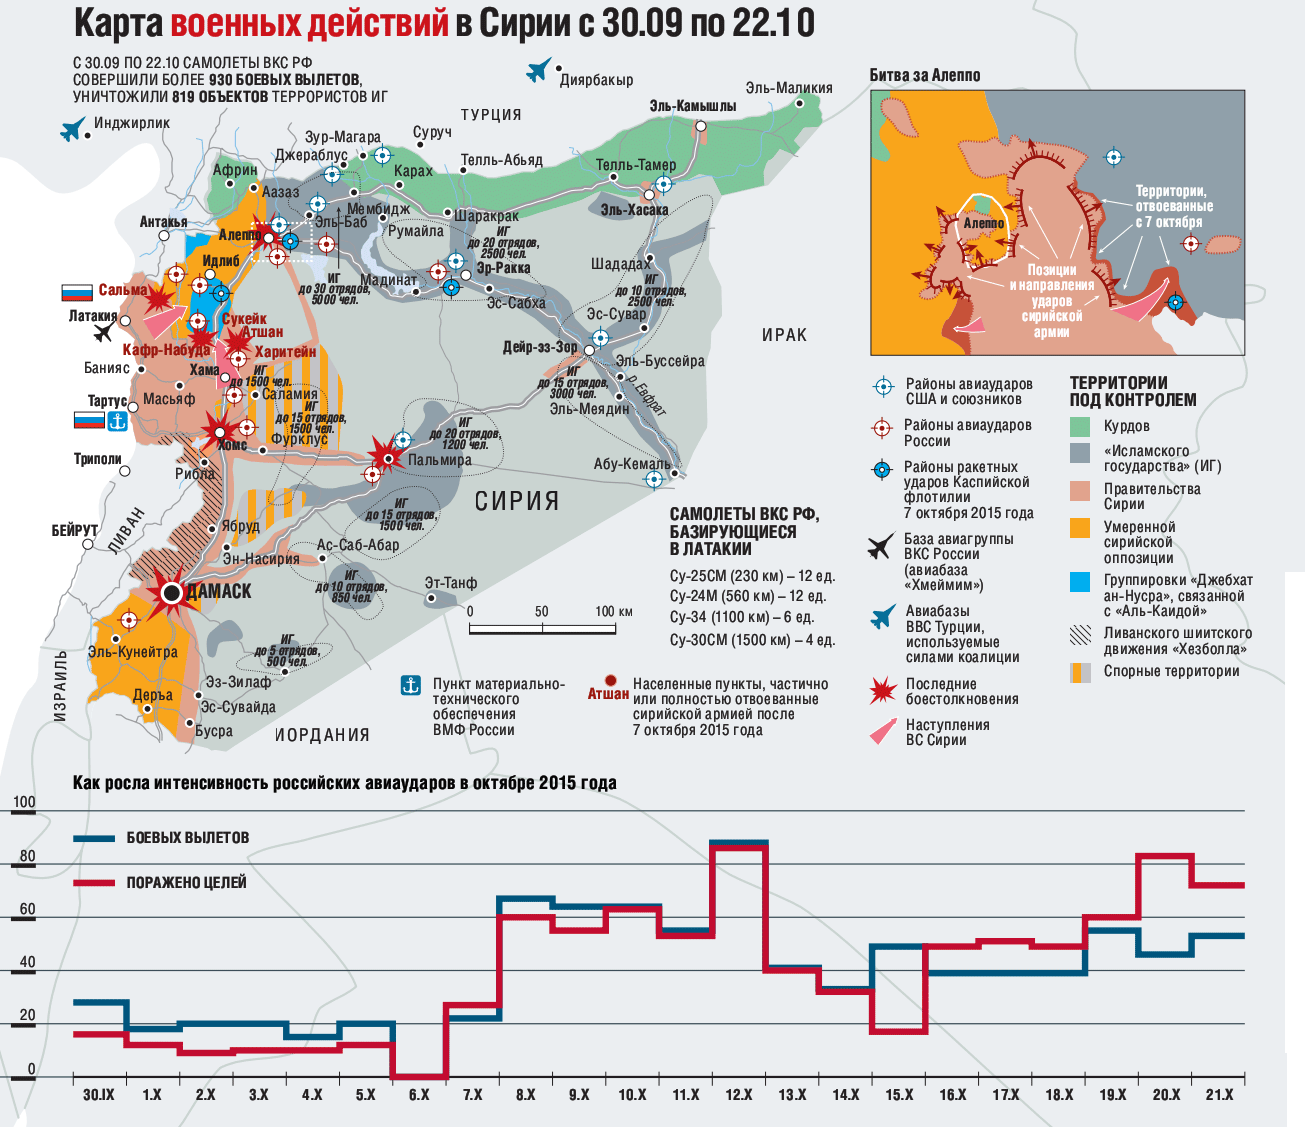 Итоги первого месяца участия ВКС России в операциях в Сирии 